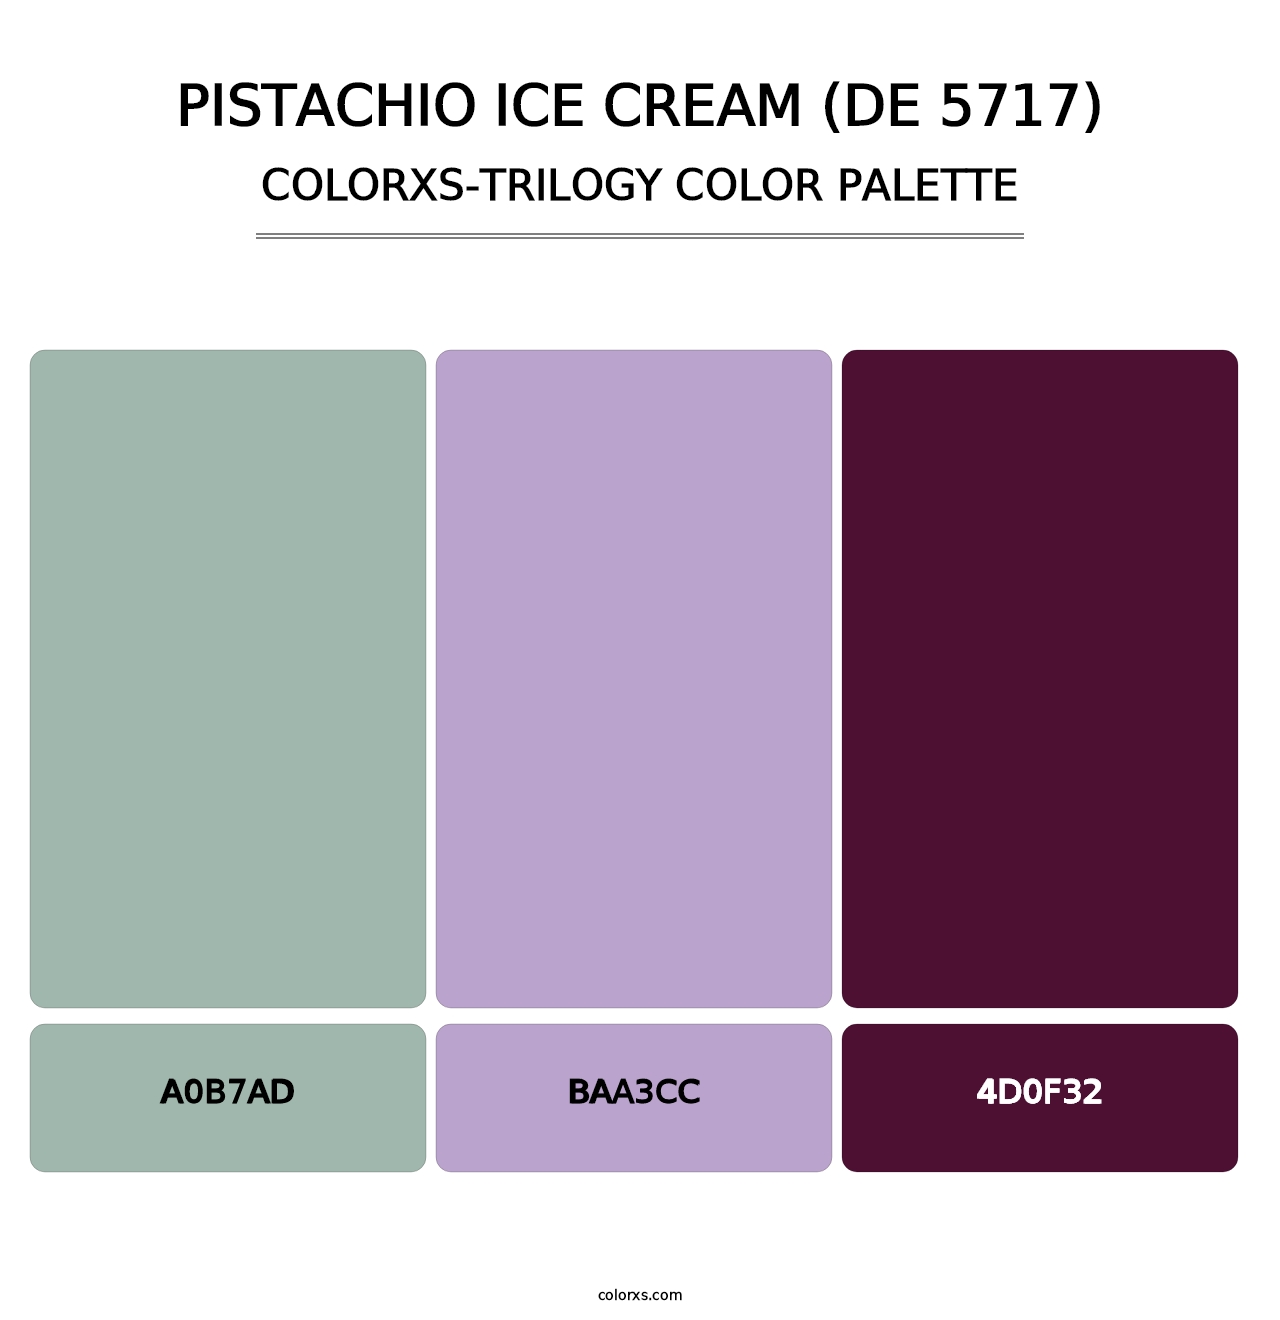 Pistachio Ice Cream (DE 5717) - Colorxs Trilogy Palette